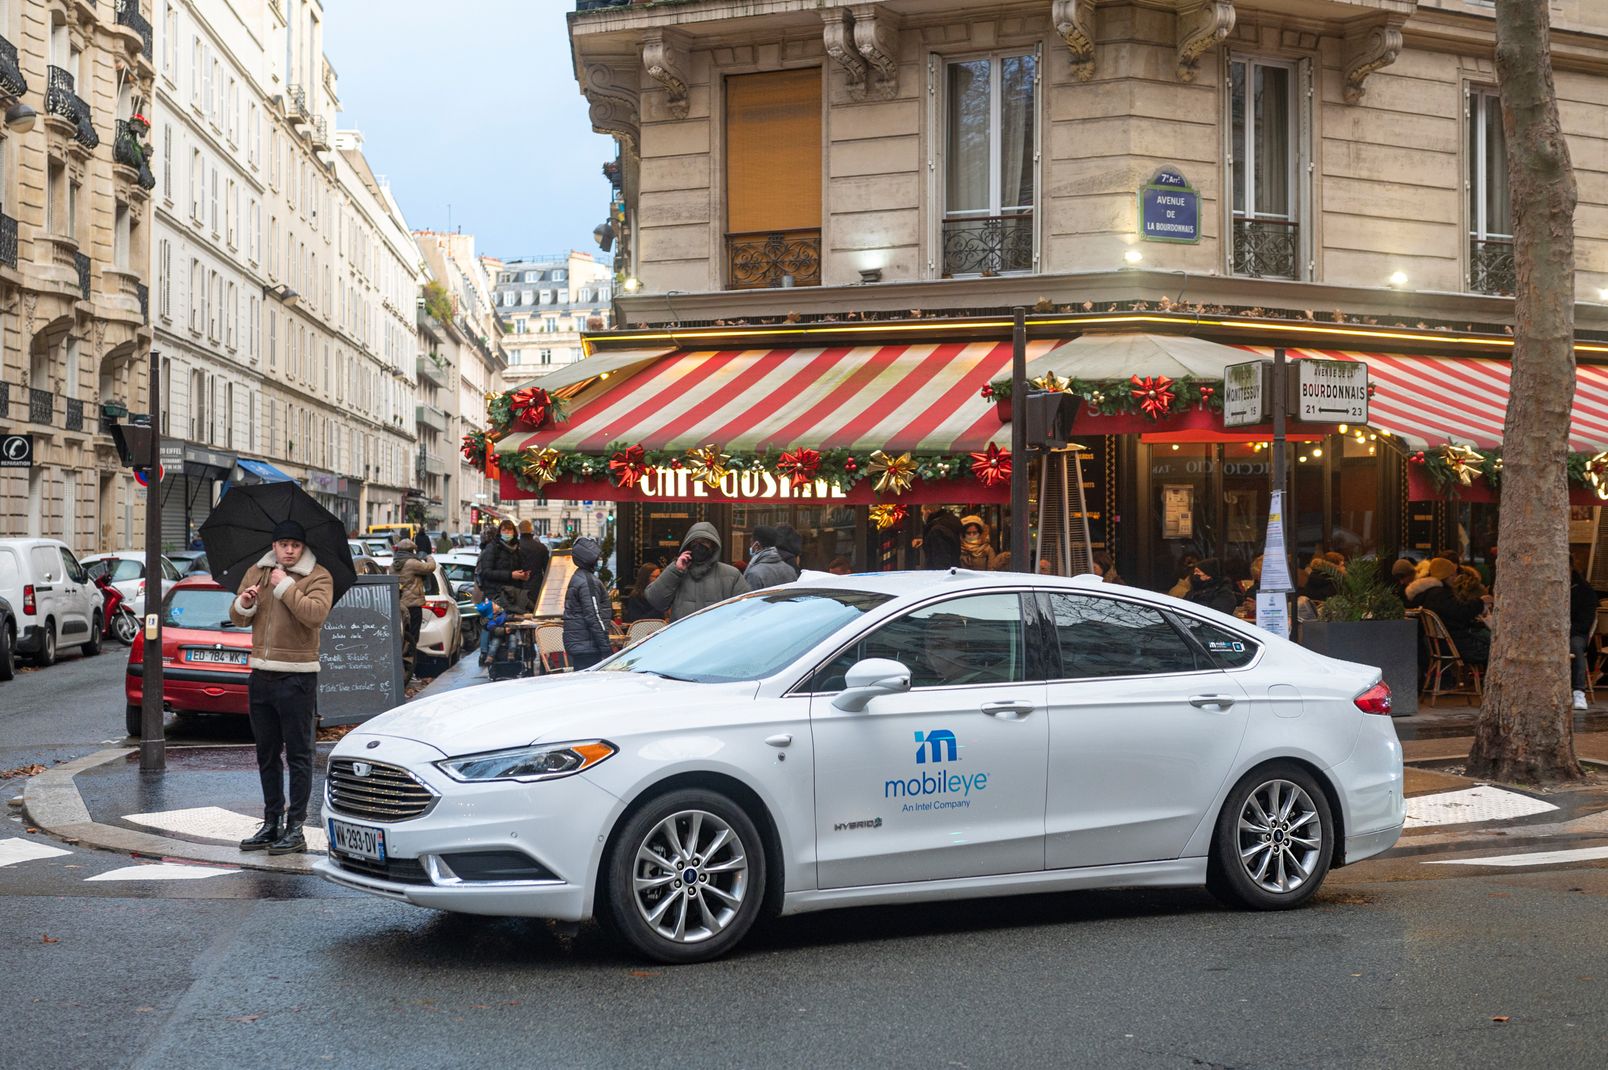 Mobileye autonomous vehicle outside a street corner cafe in Paris